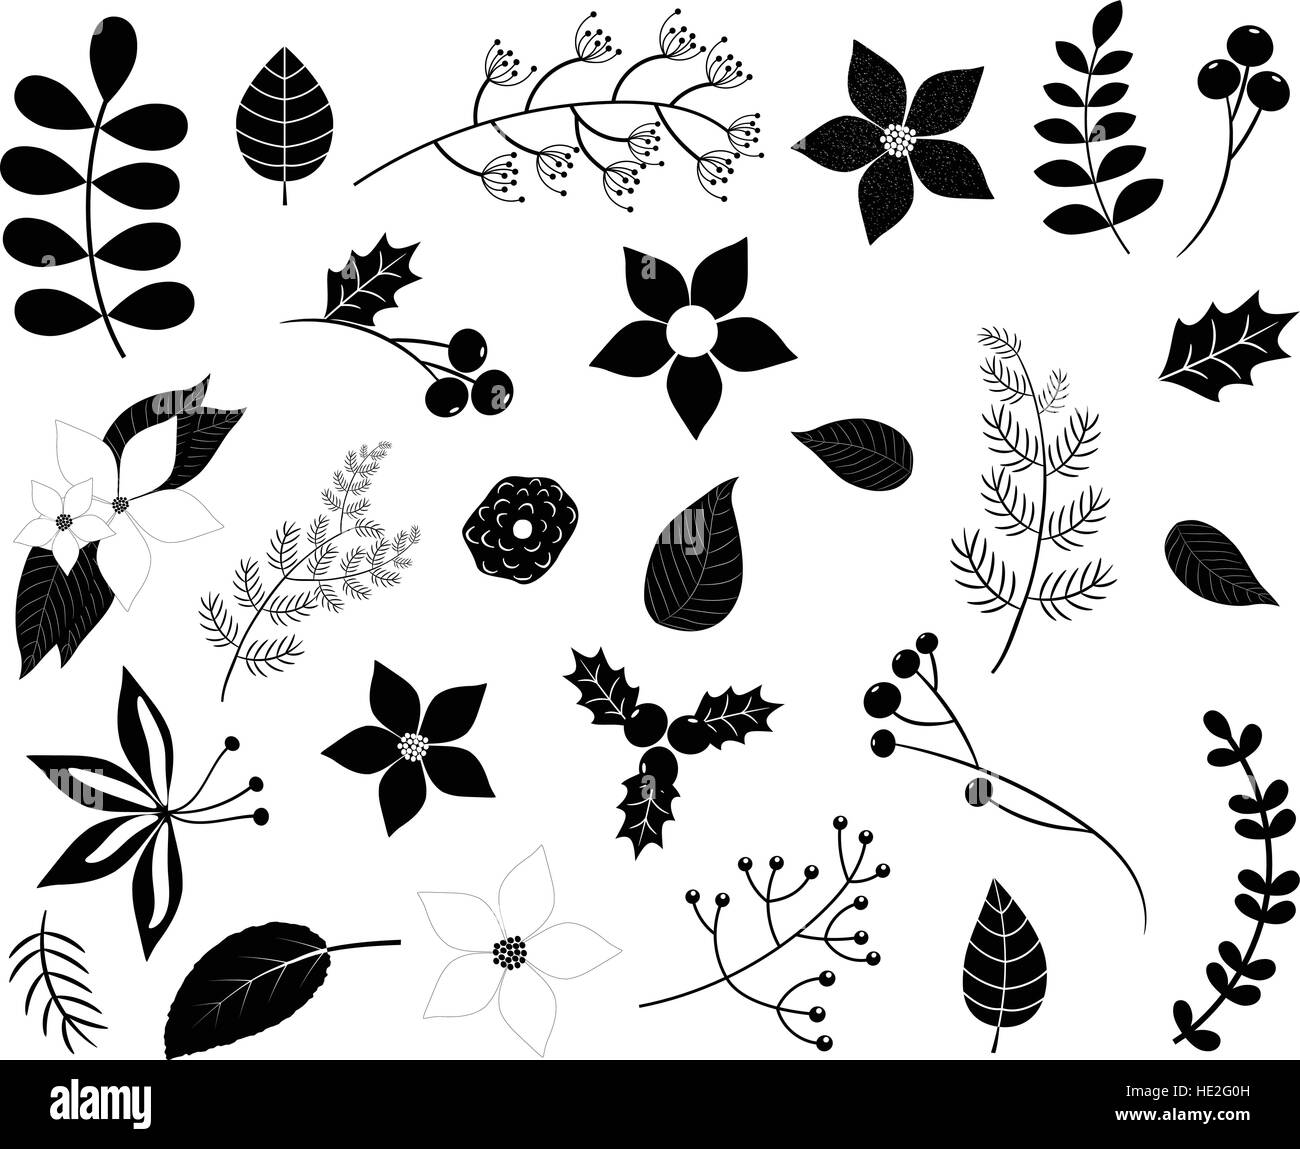 Feuillage d'hiver noires silhouettes de fleurs, les feuilles, les branches et les baies isolated on white Illustration de Vecteur